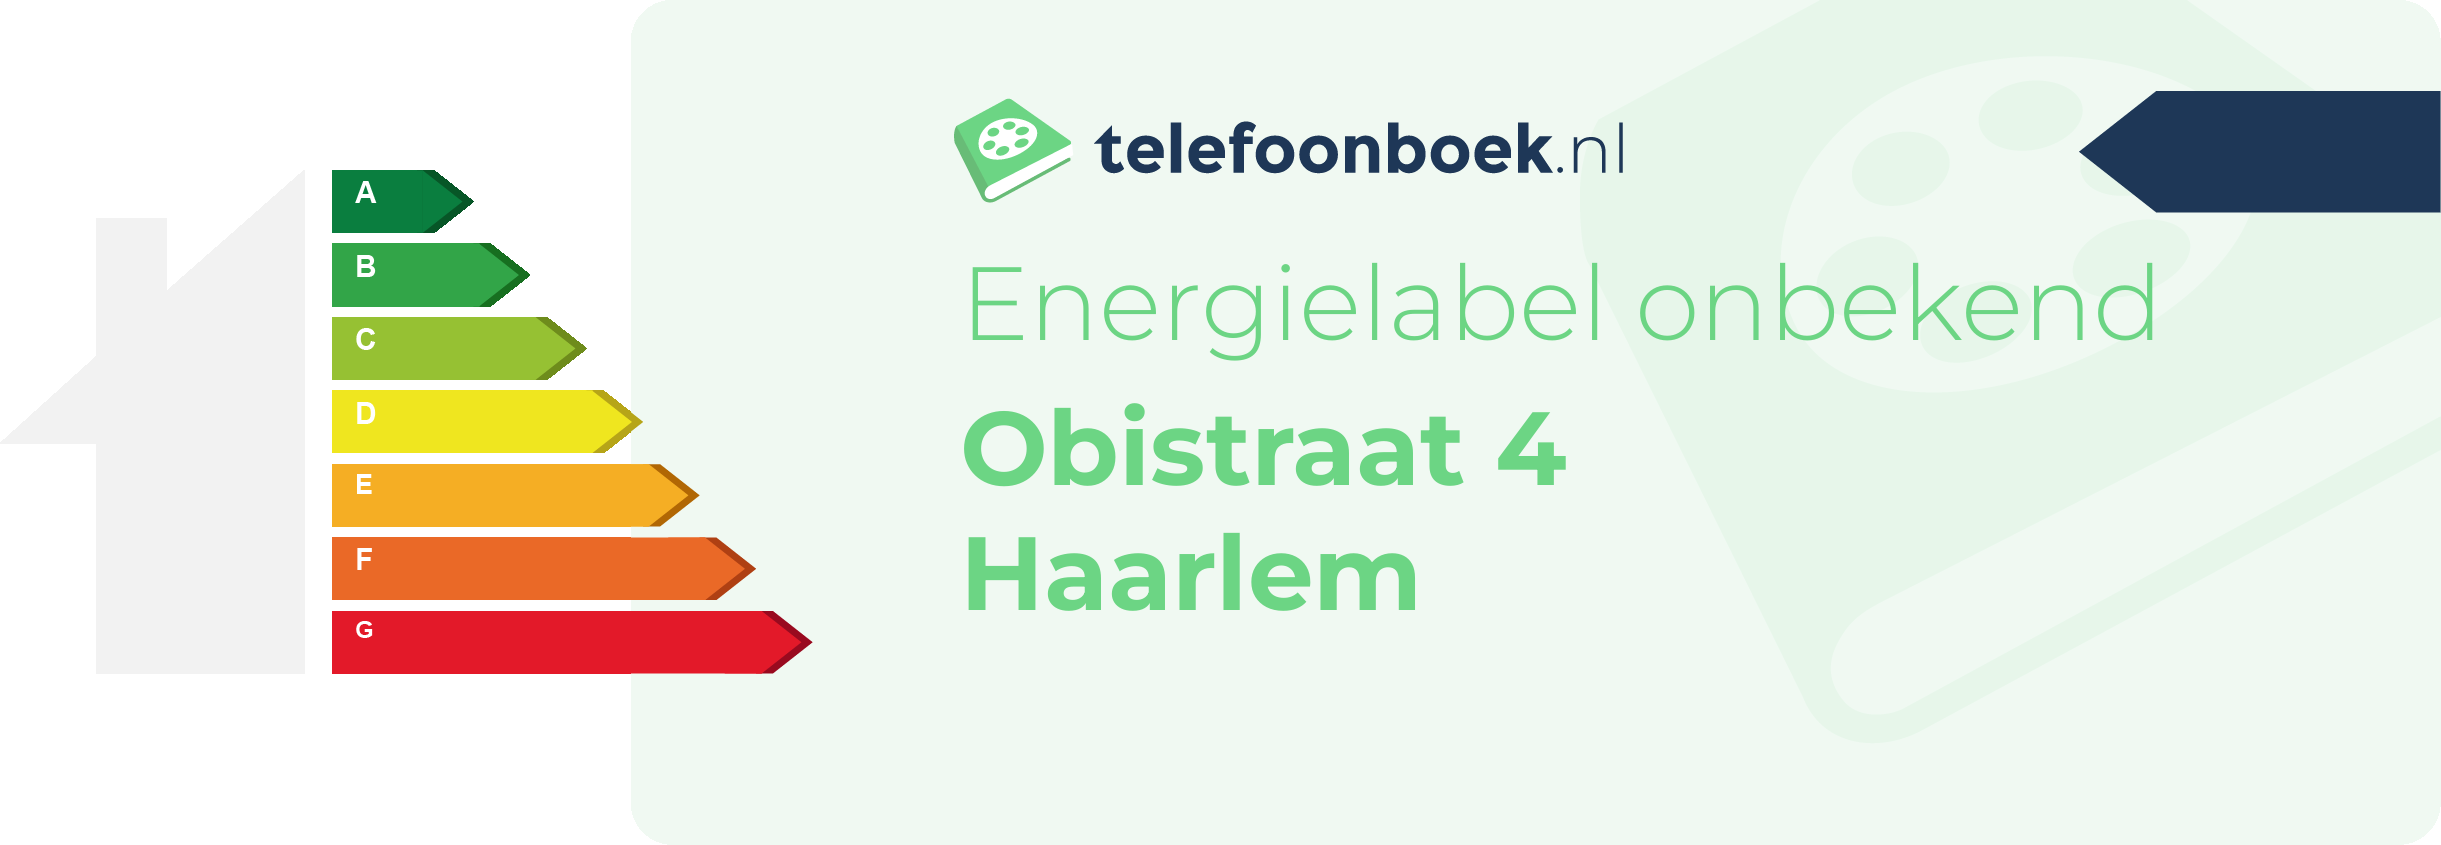 Energielabel Obistraat 4 Haarlem